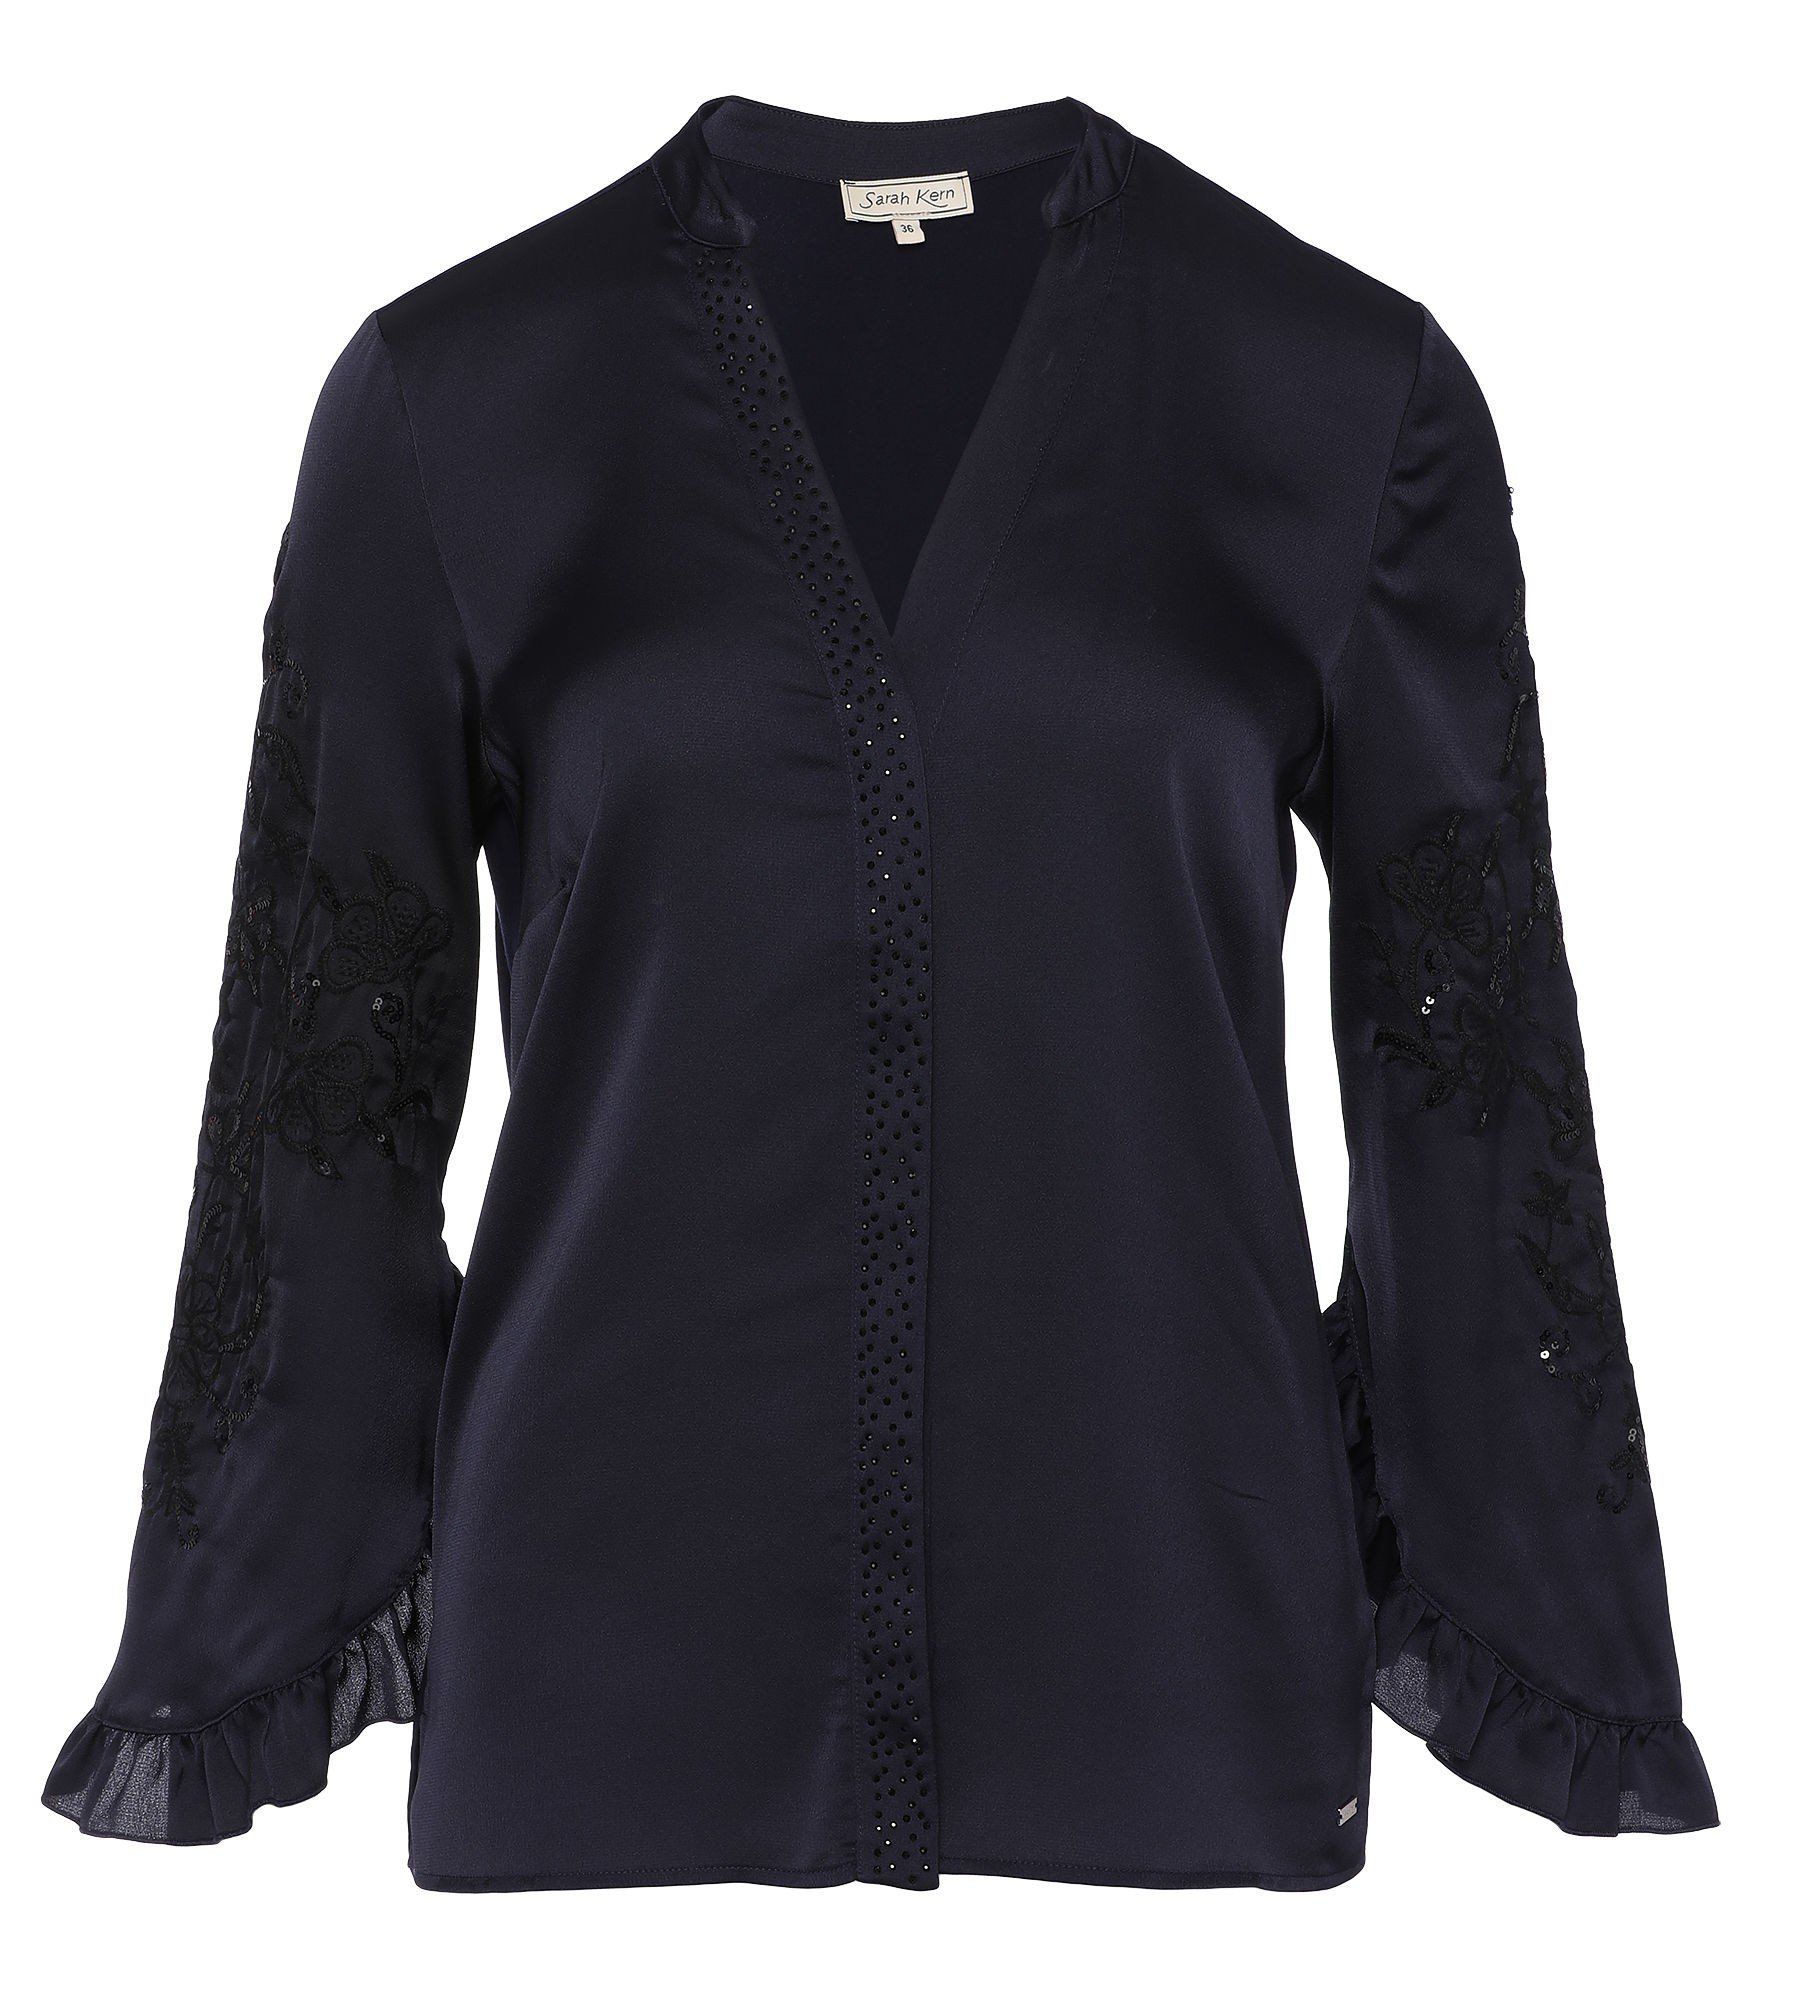 Couture Bluse Midnight - Alle Produkte ansehen - Fashion - Sarah Kern -  Marken